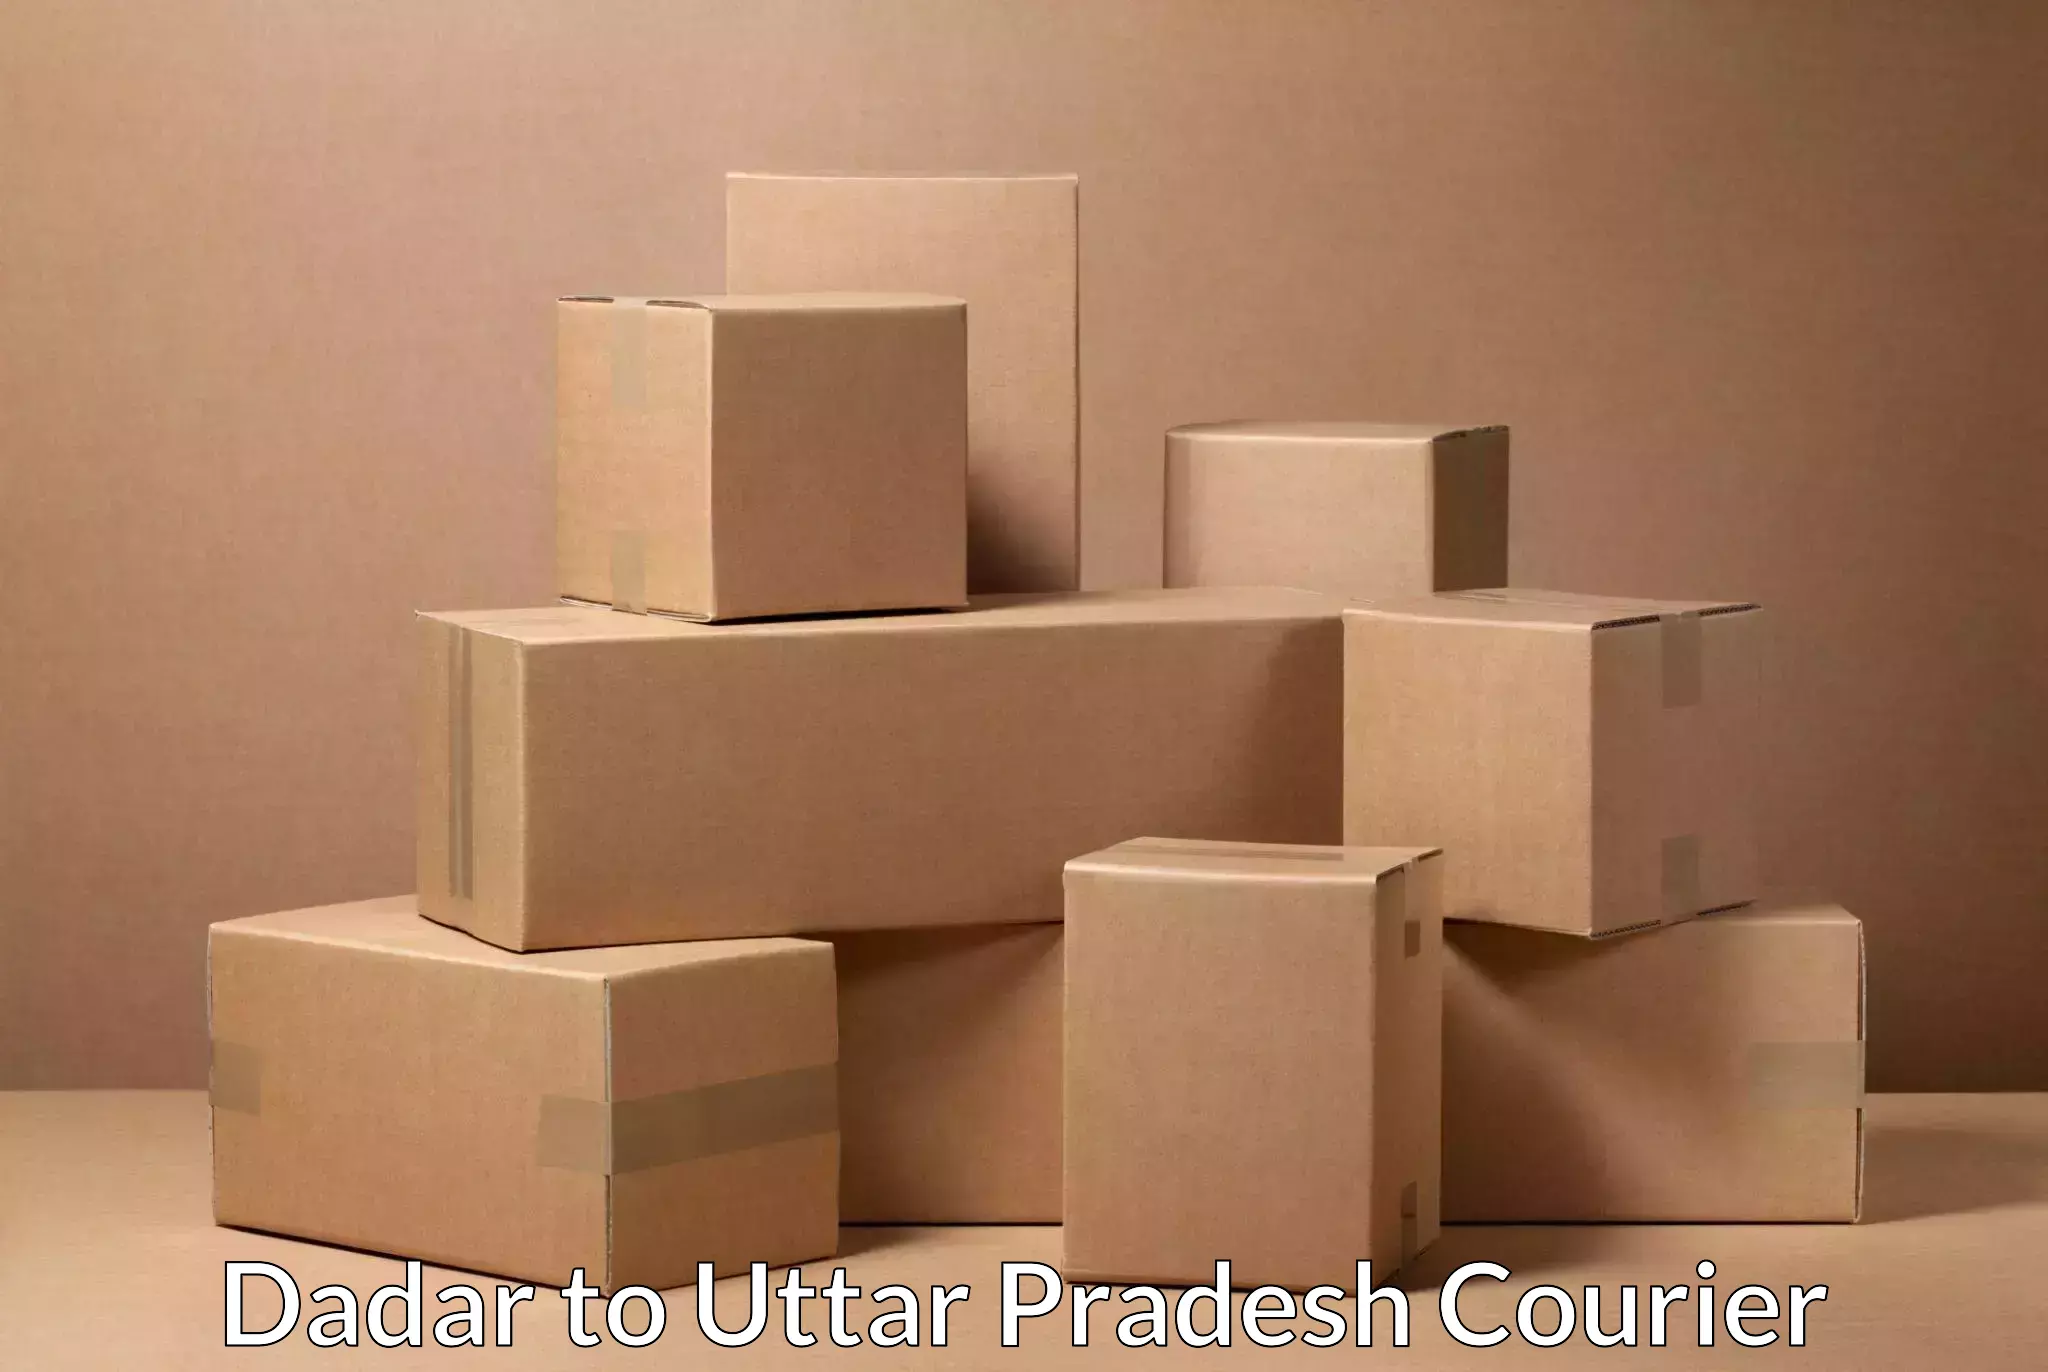 Individual parcel service Dadar to Aligarh